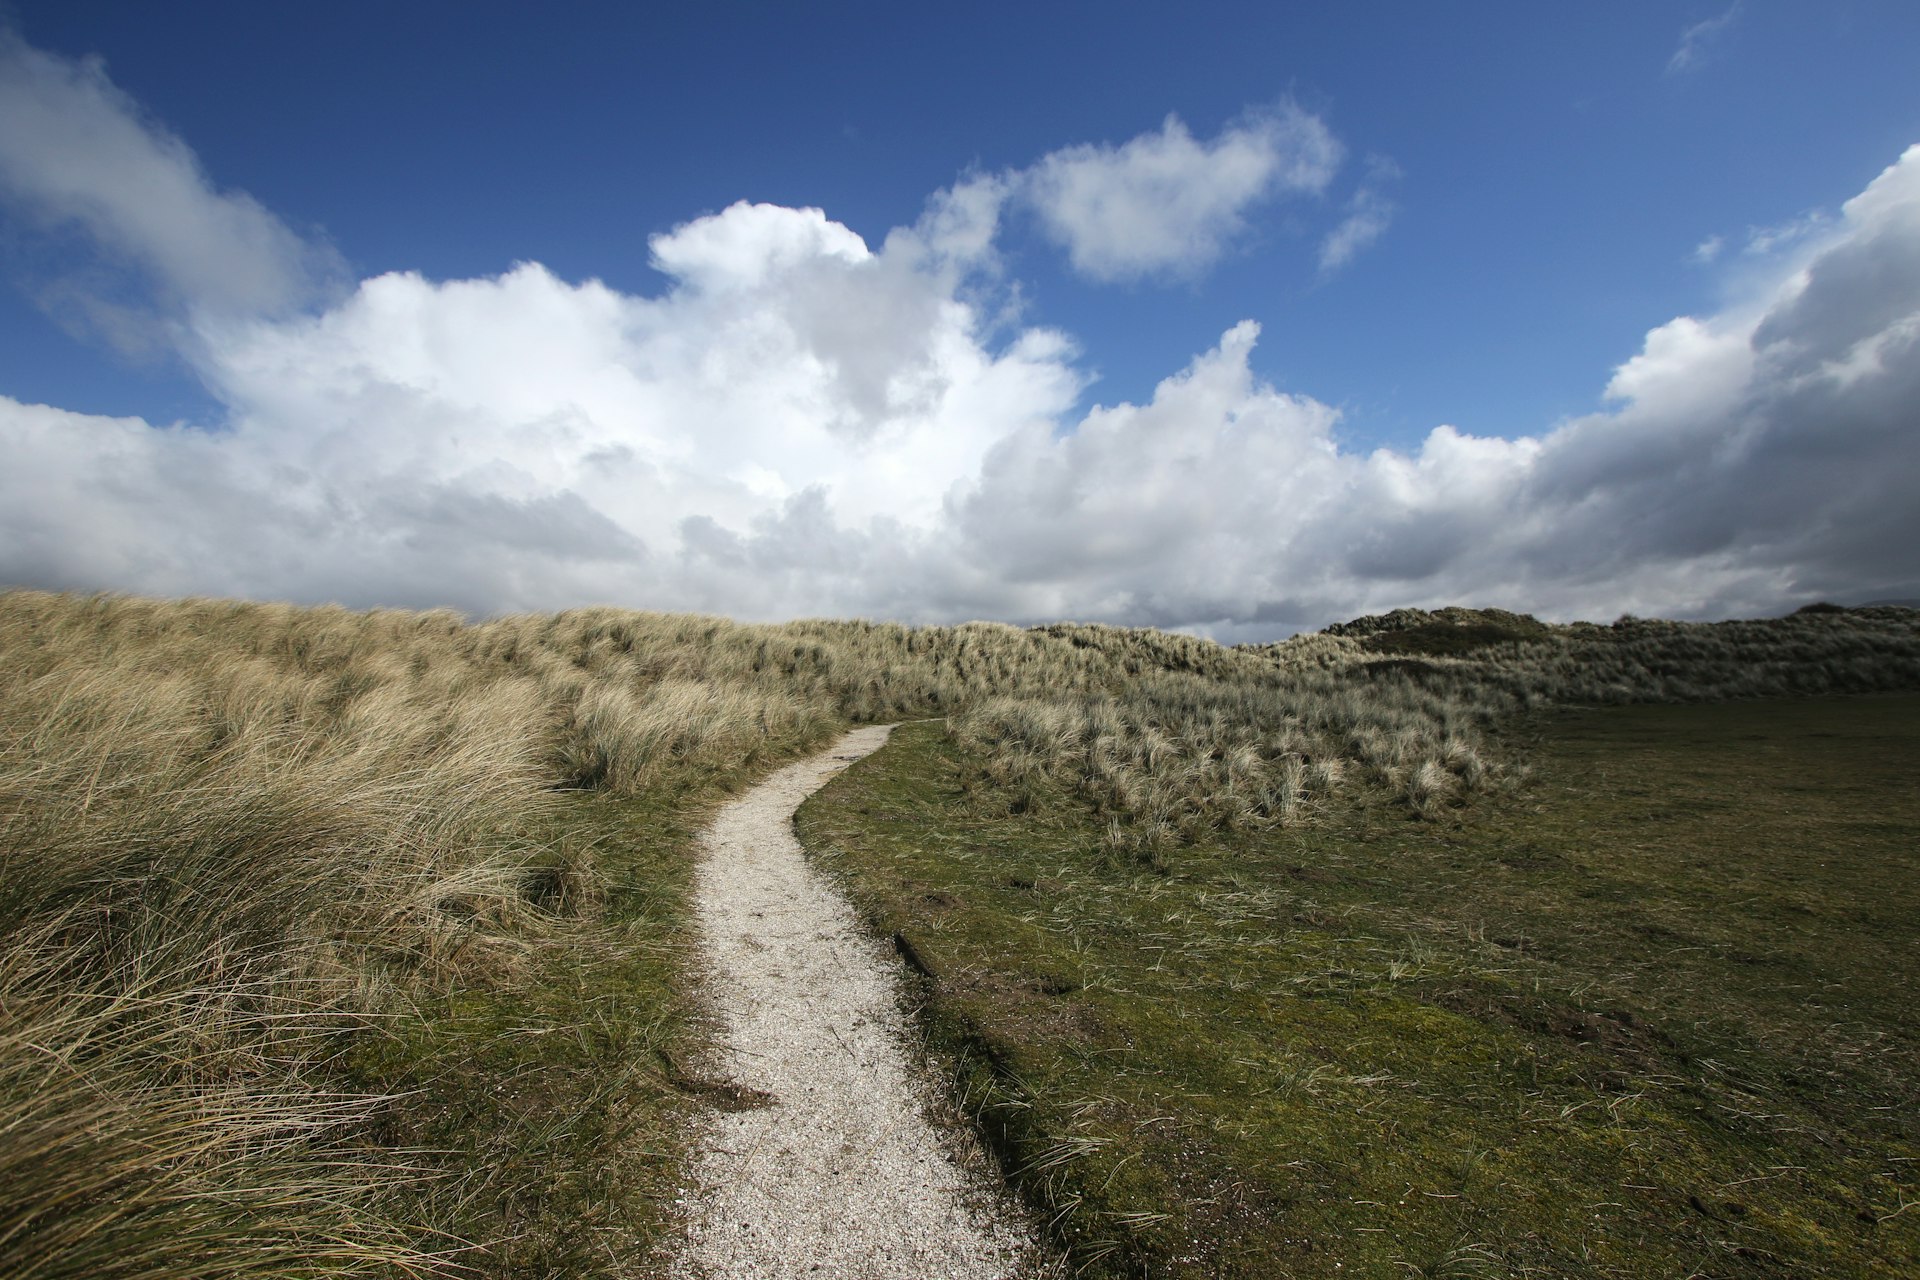 A sandy path at Ynyslas Dunes, Wales